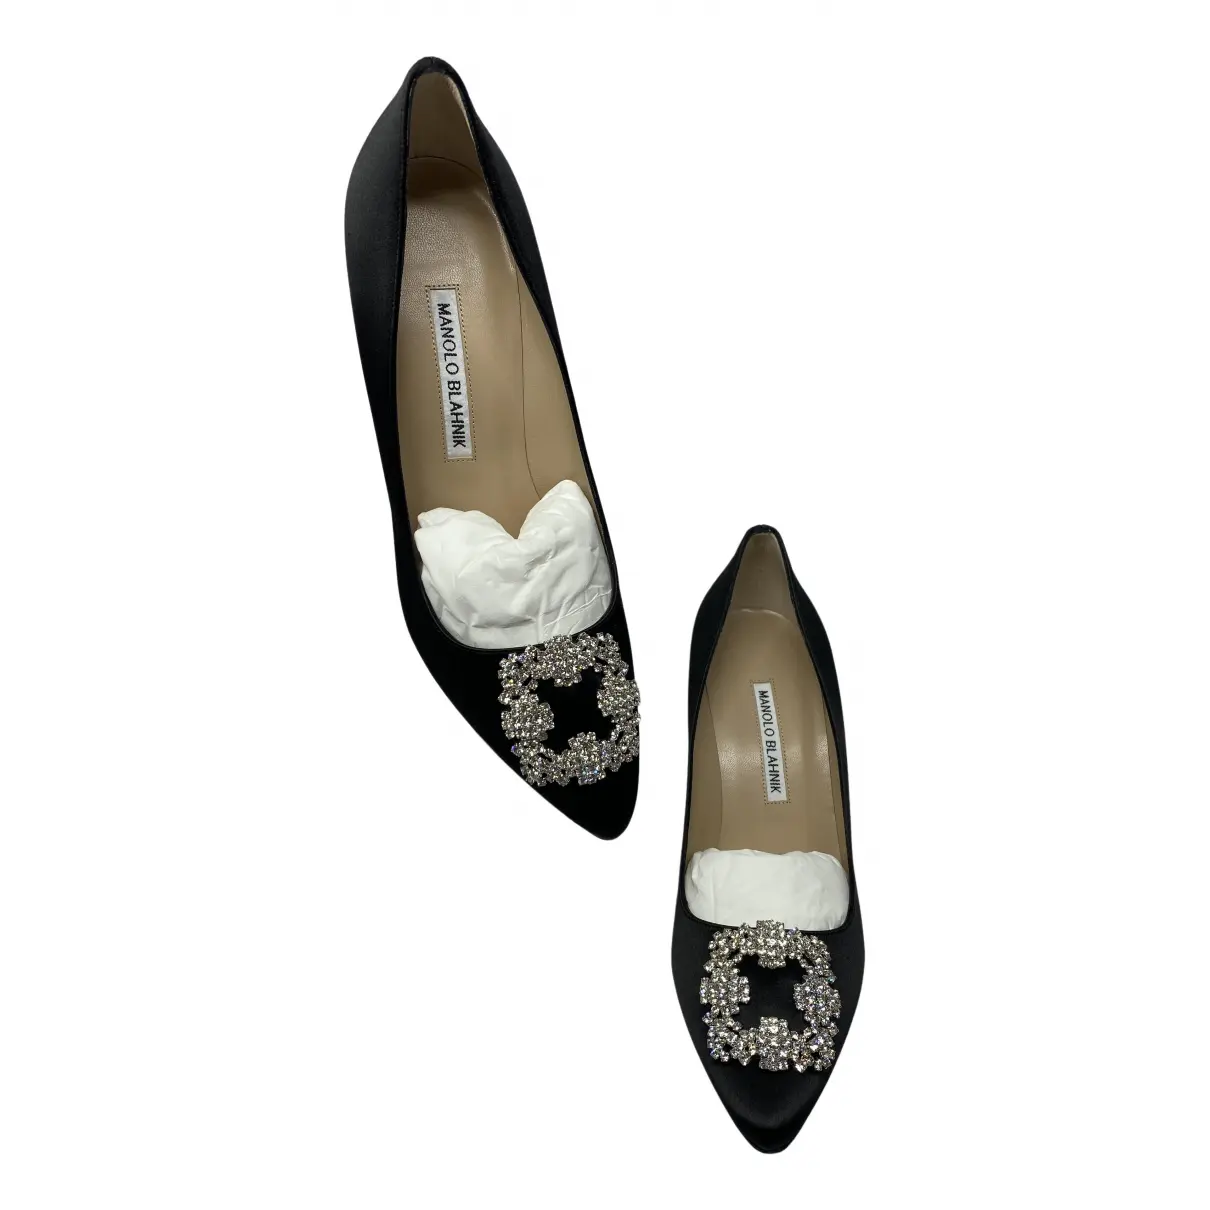 Buy Manolo Blahnik Hangisi cloth heels online